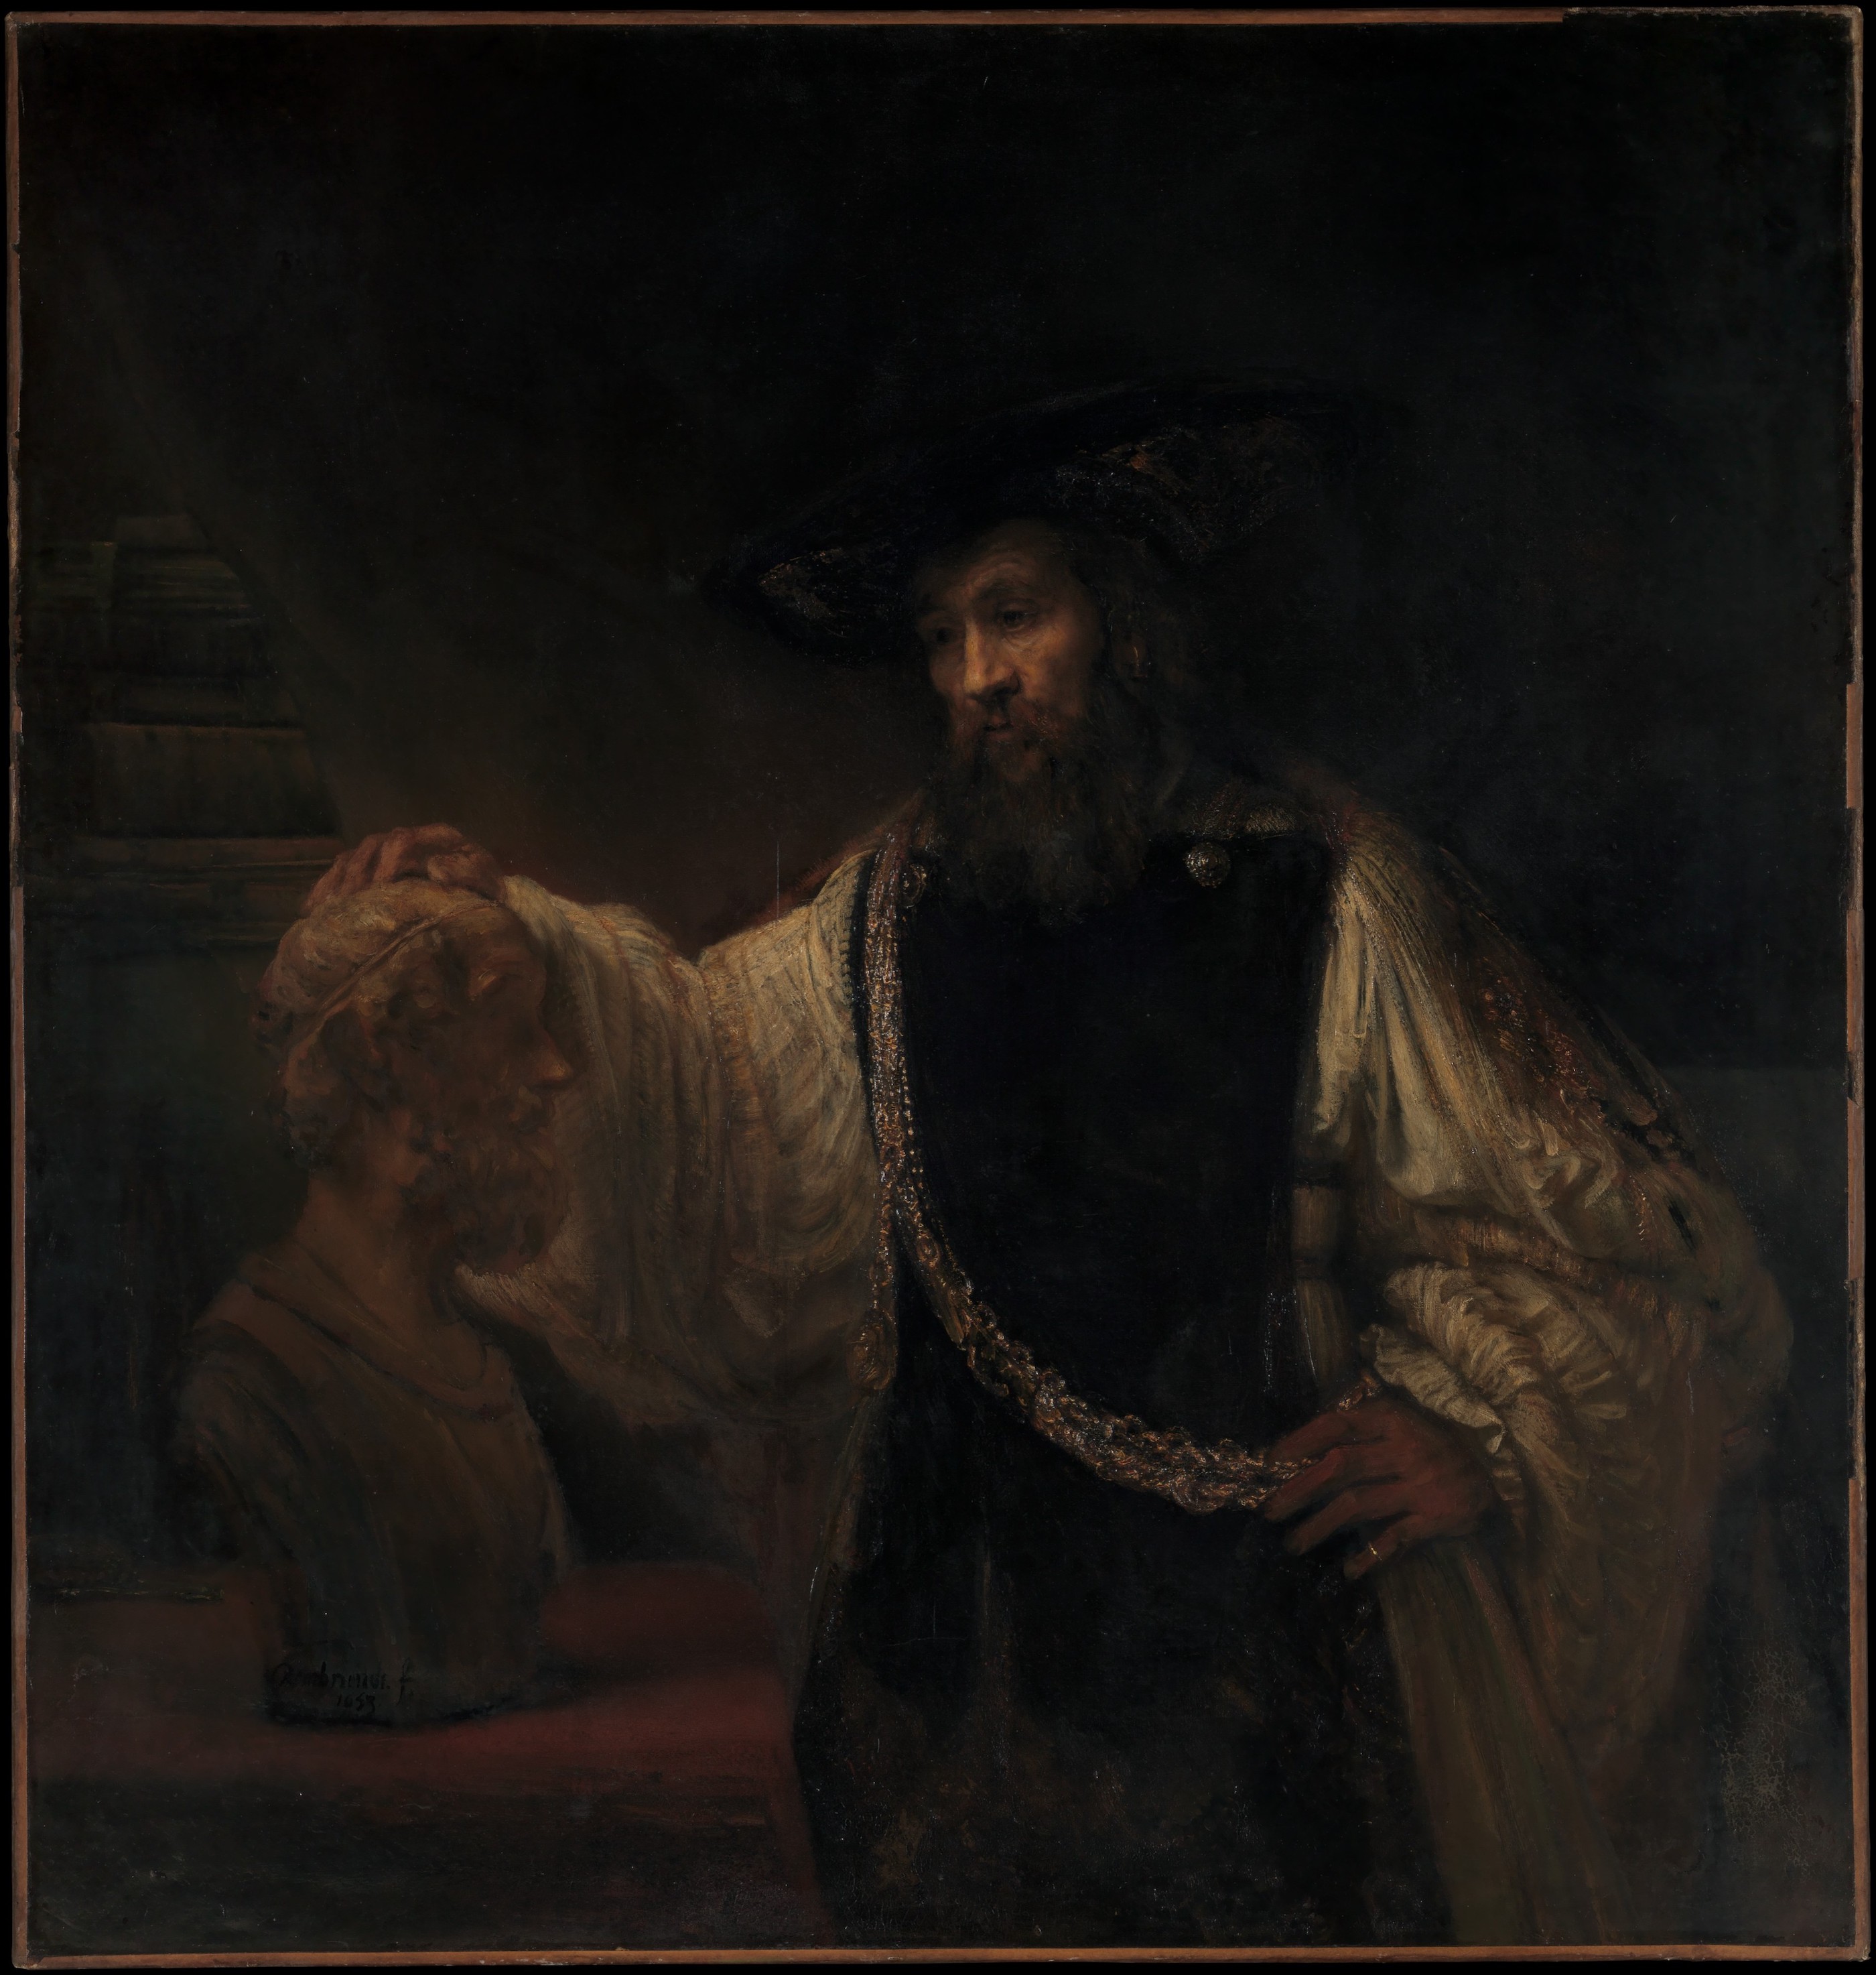 亚里士多德与荷马半身像 by 伦勃朗· 范·莱因 - 1653 - 143.5 × 136.5 cm 